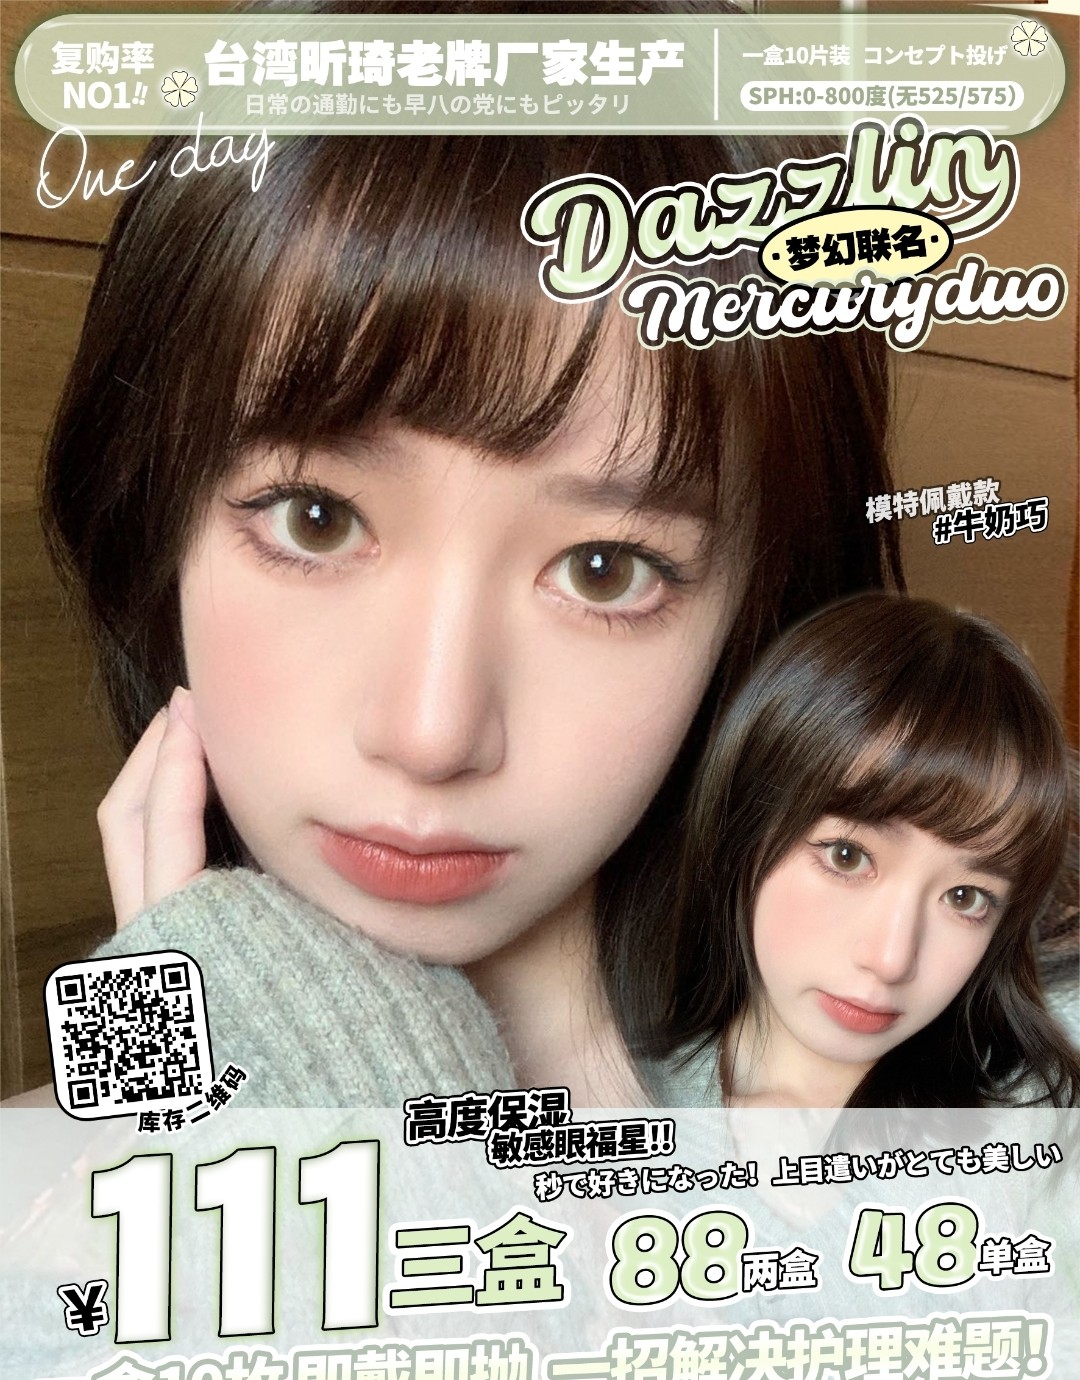 【日抛】Dazzlin&Mercuryduo 台湾昕琦老牌厂家生产 均价低至37 快快囤起来‼